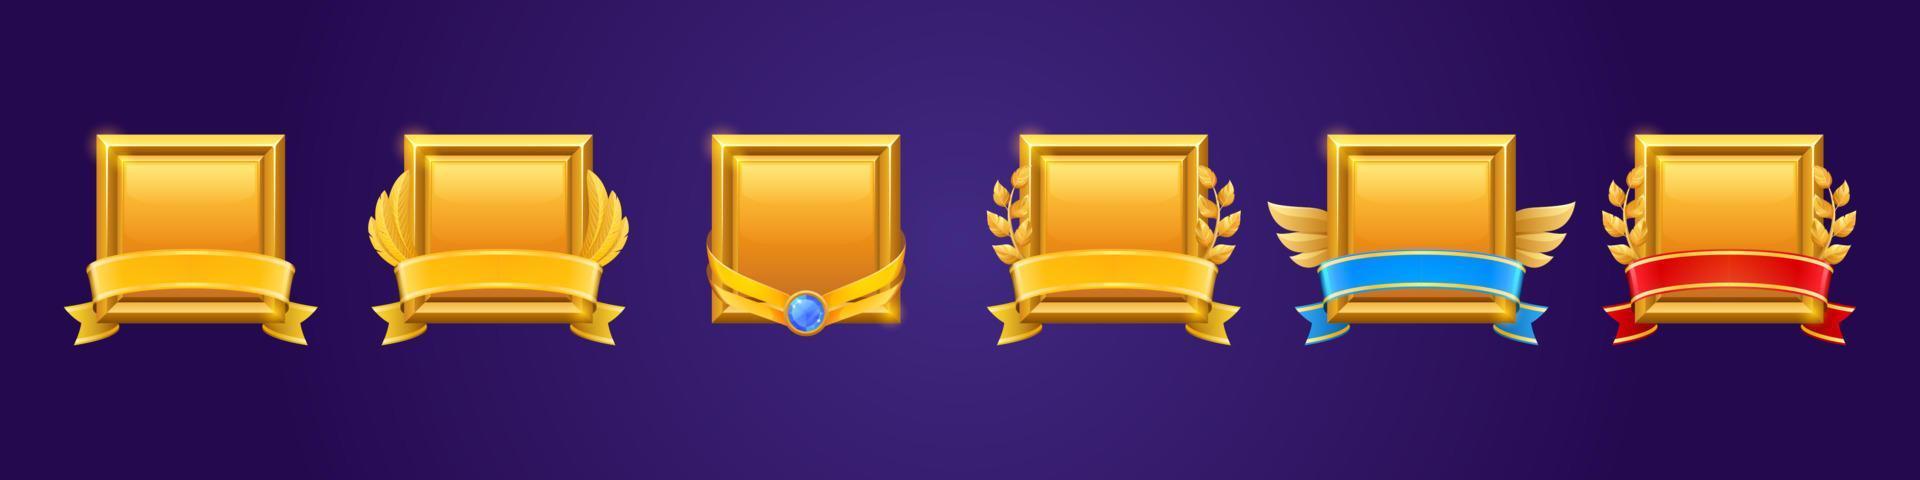 badges carrés dorés pour gagner dans le jeu vecteur